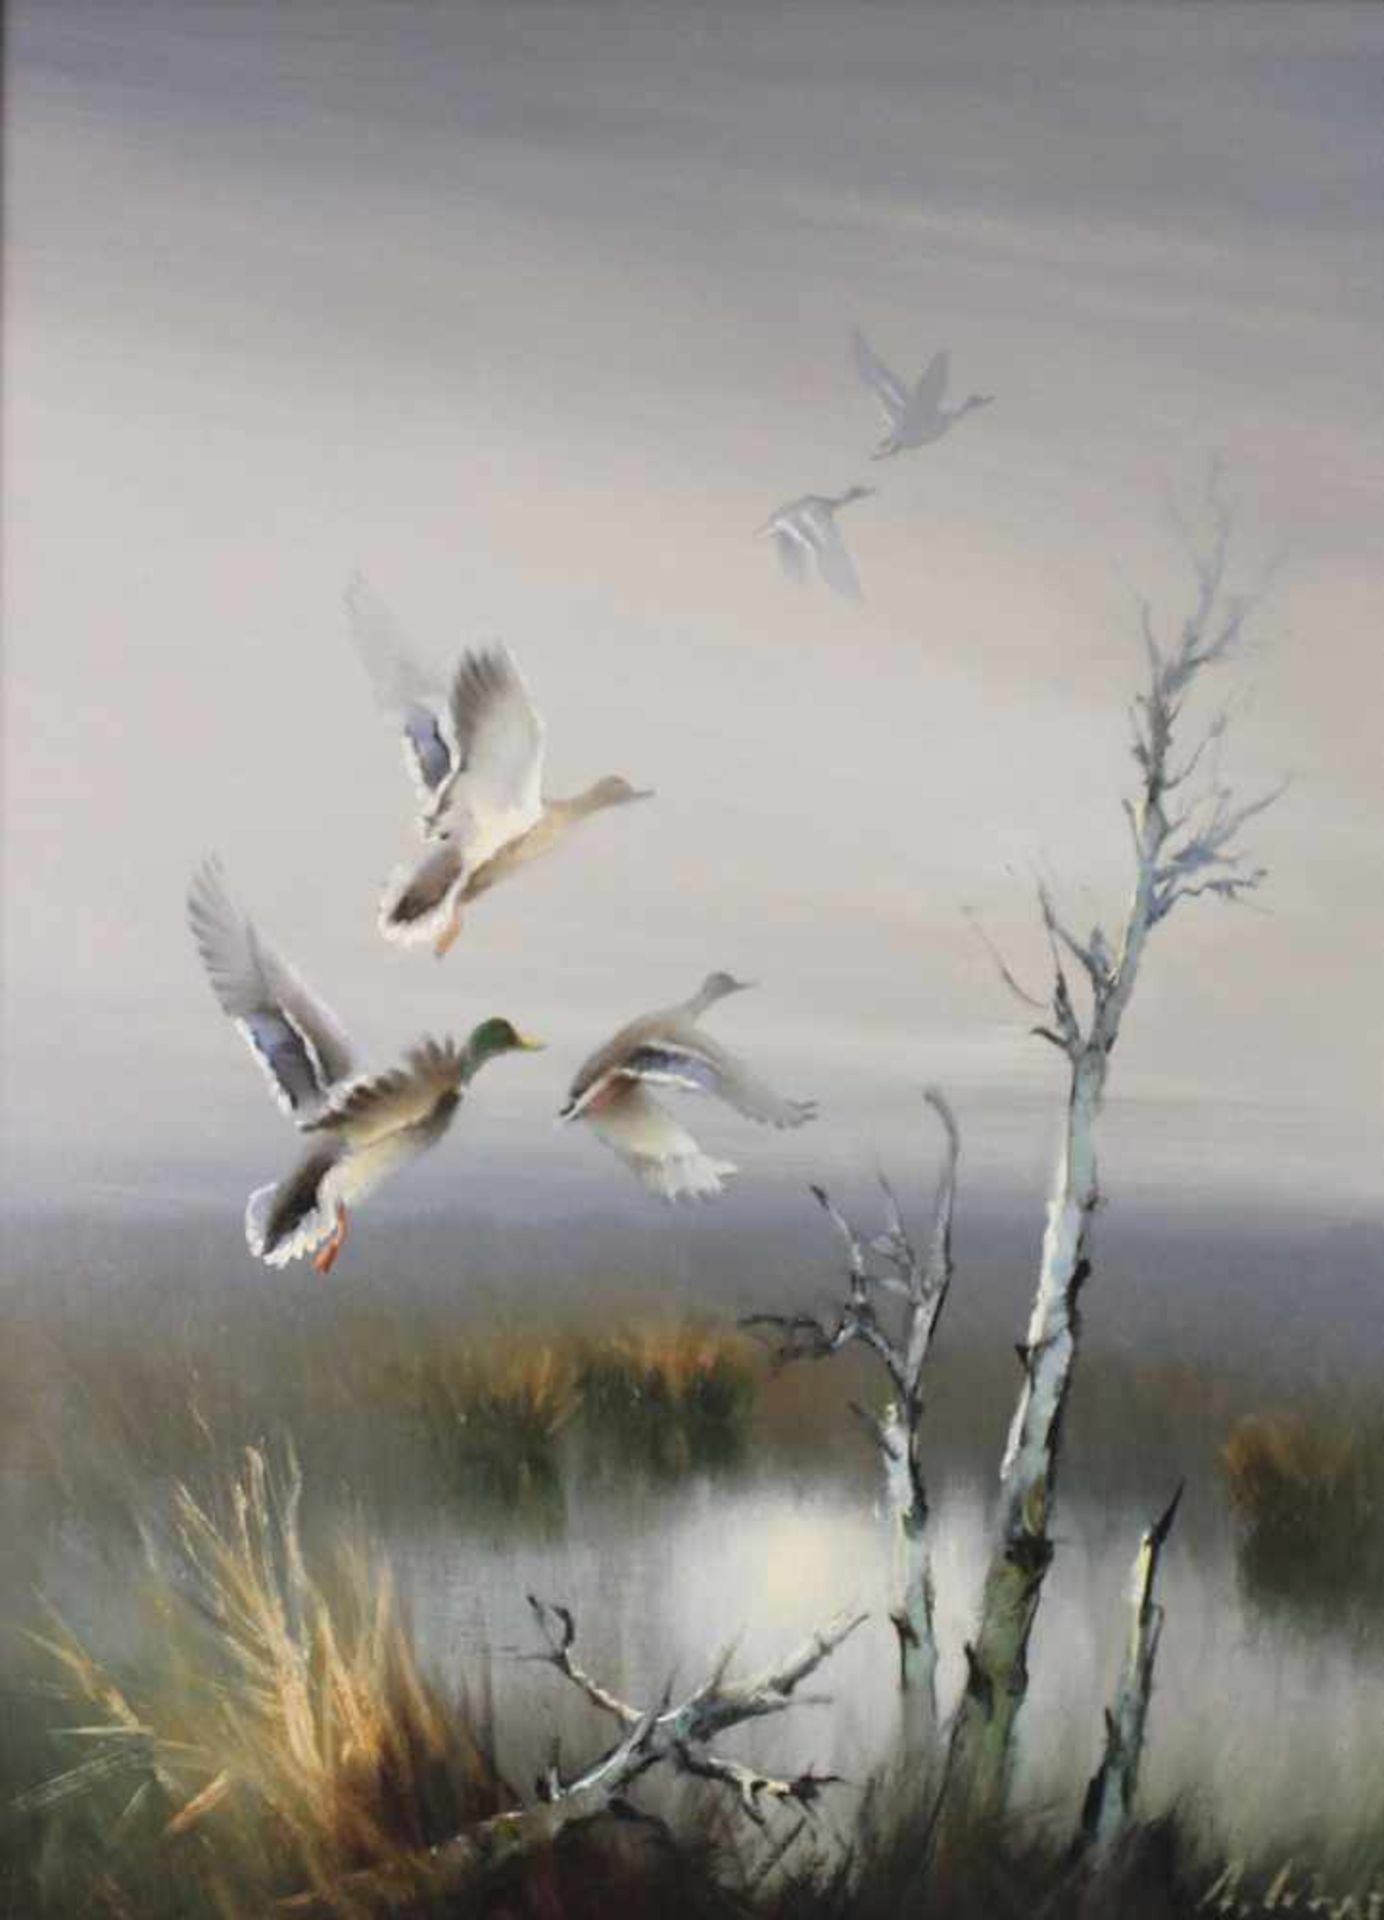 Arnold SCHATZ (1929 - c.1999). "Aufsteigende Enten"80 cm x 70 cm. Gemälde. Öl auf Leinwand. Rechts